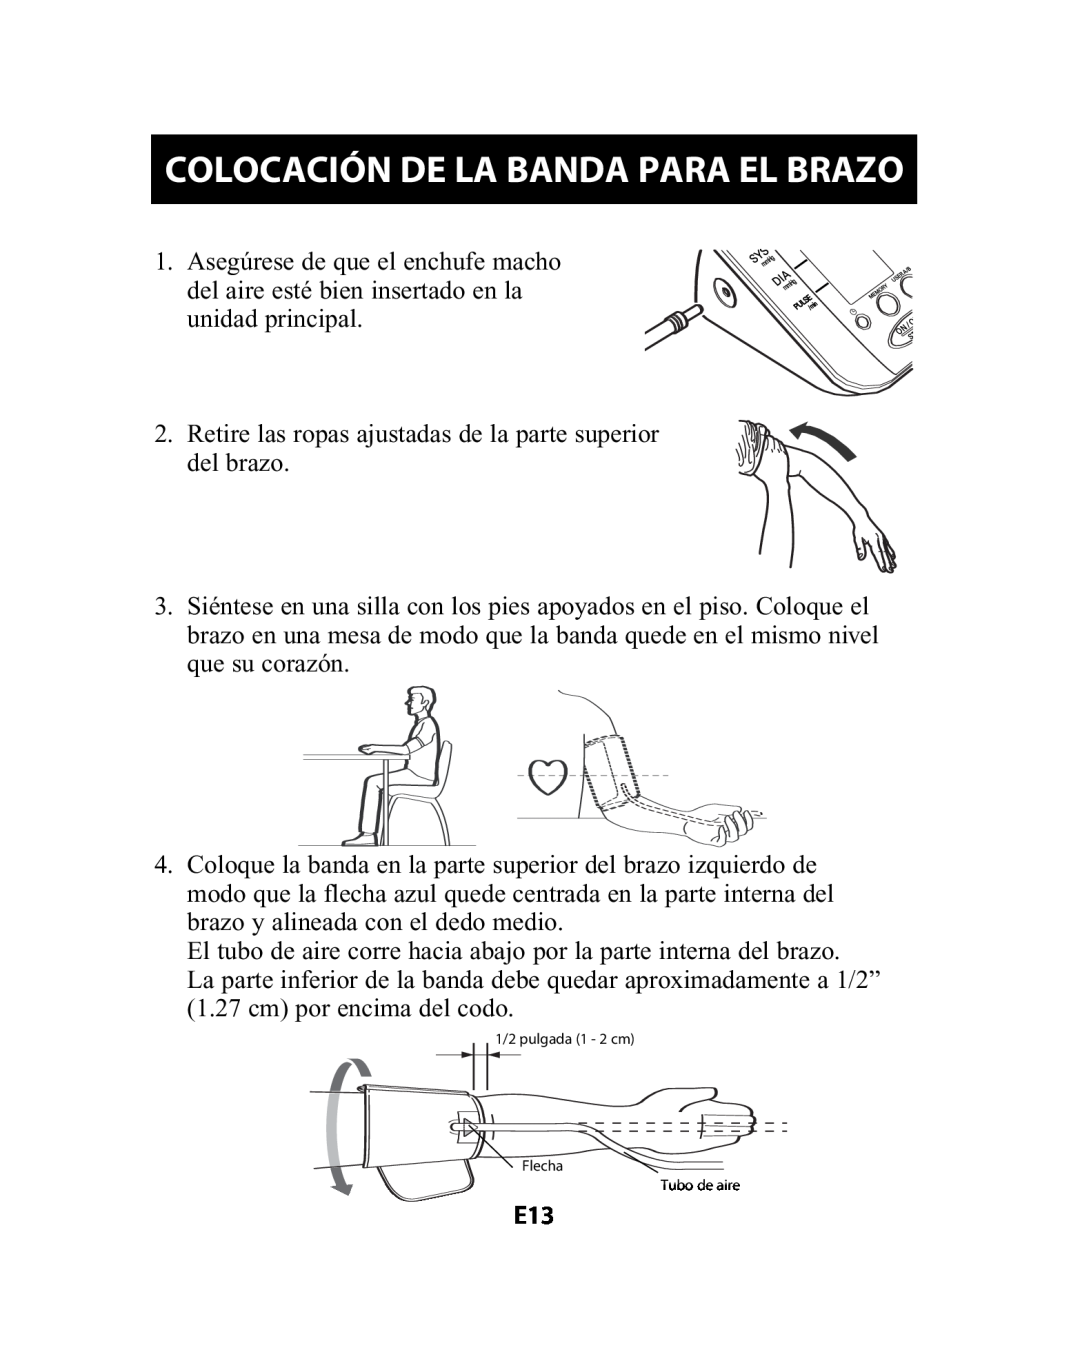 Omron Healthcare HEM-741CREL manual Colocación De La Banda Para El Brazo 